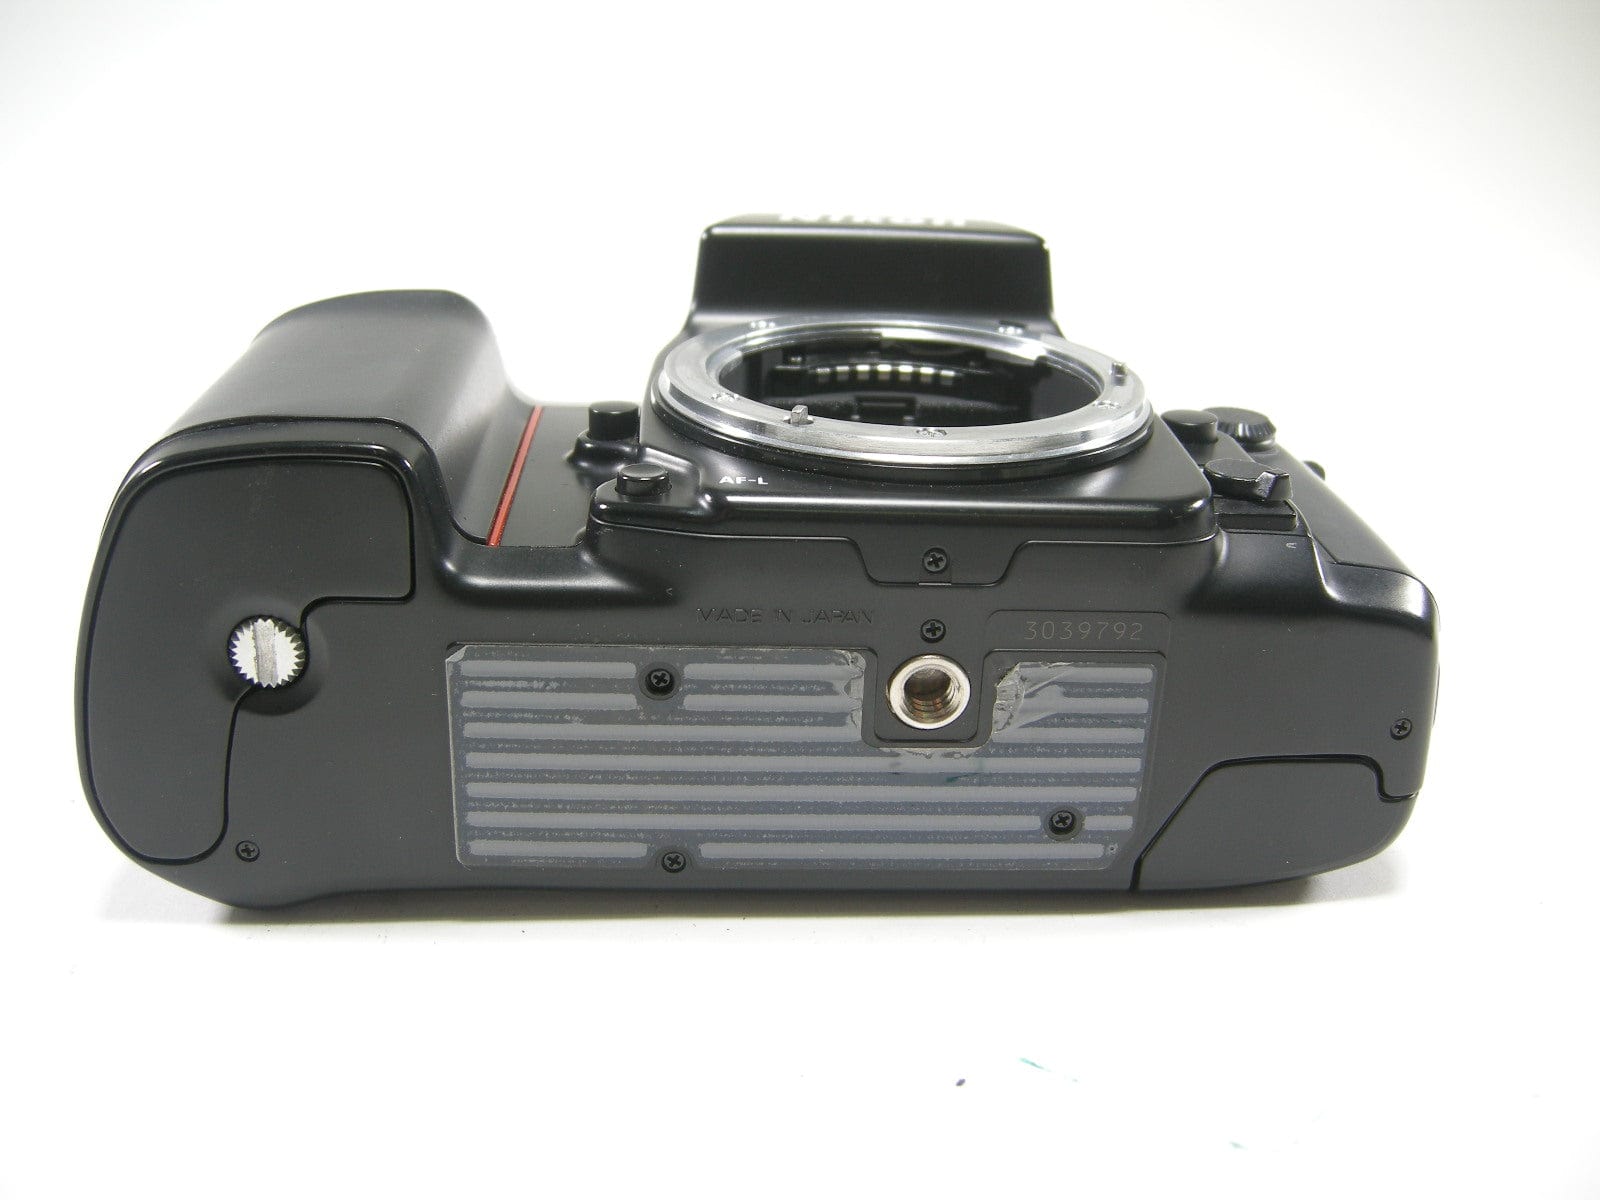 Nikon N8008s AF 35mm SLR film camera body only